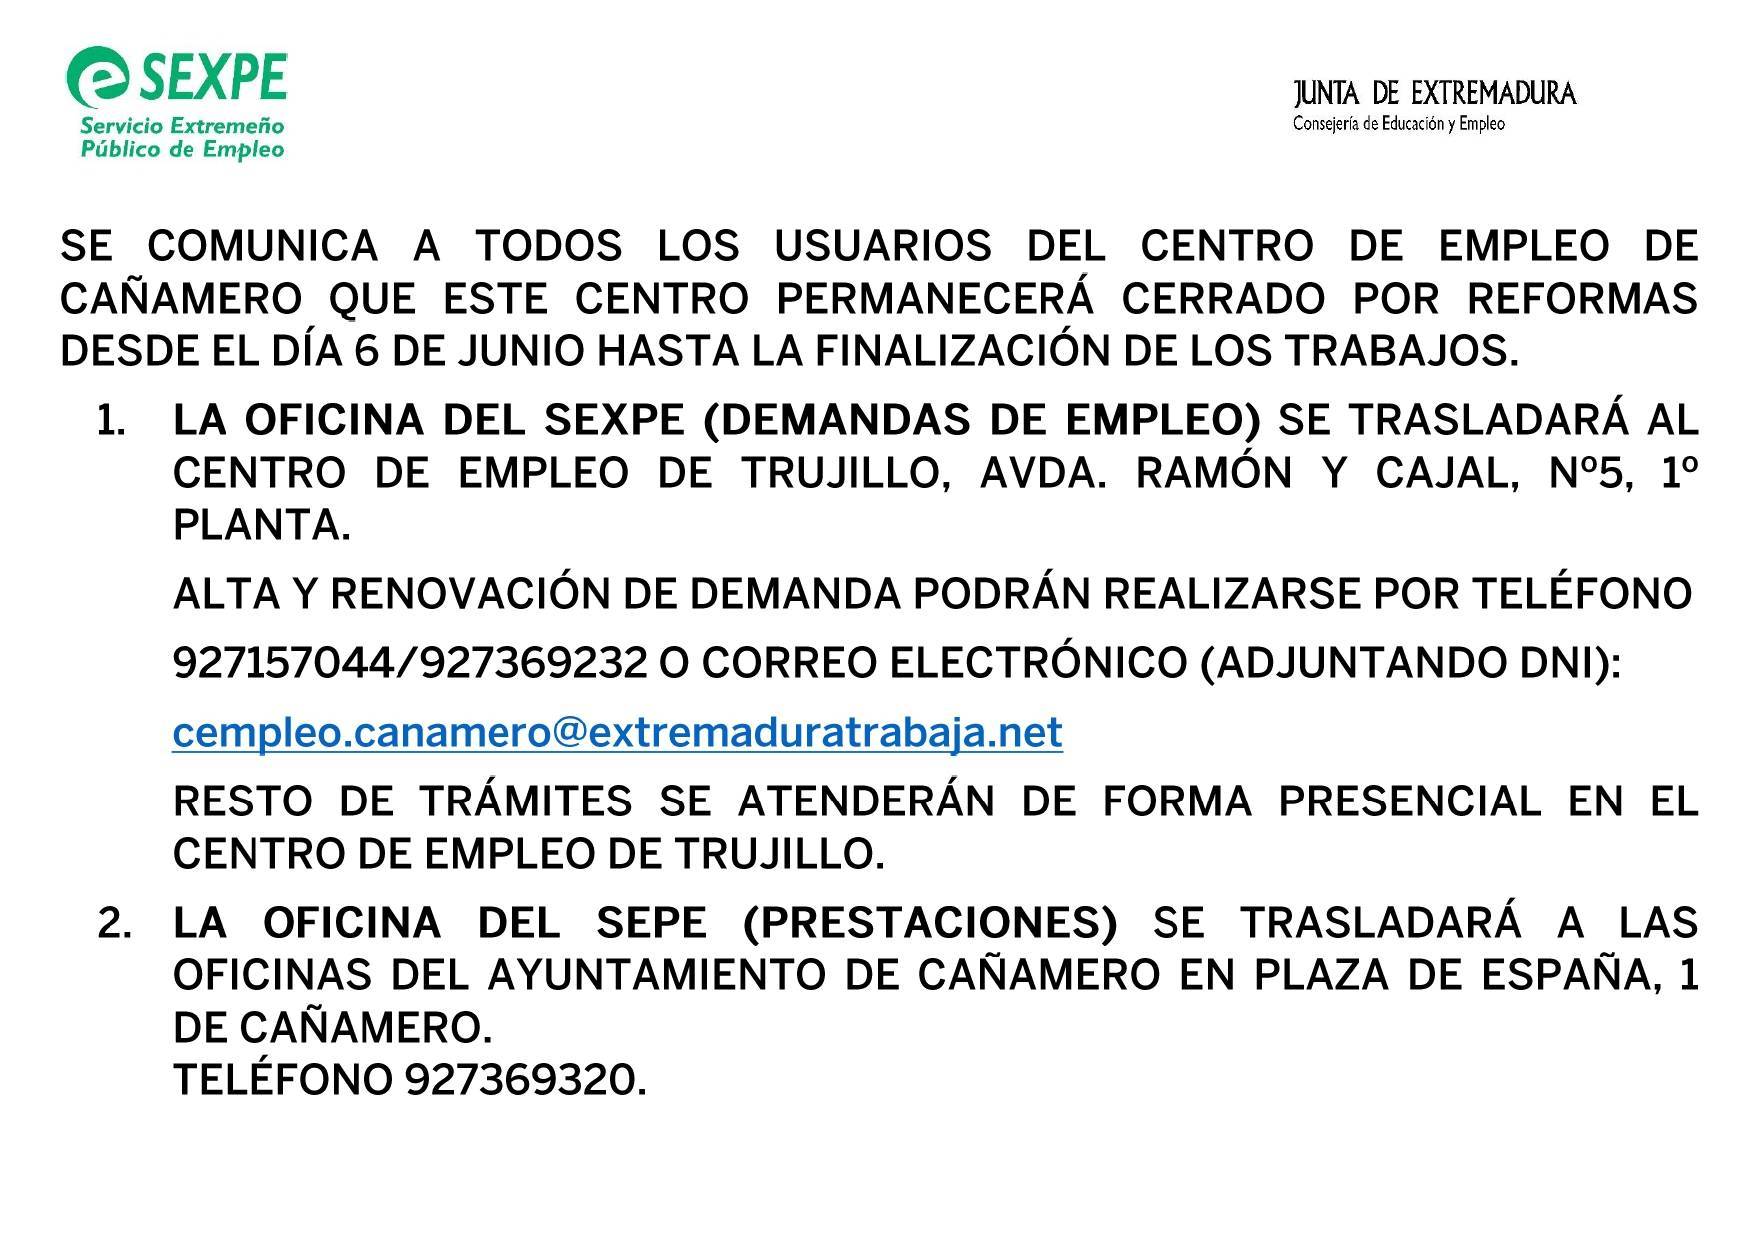 Cierre temporal del centro de empleo por reformas (junio 2022) - Cañamero (Cáceres)